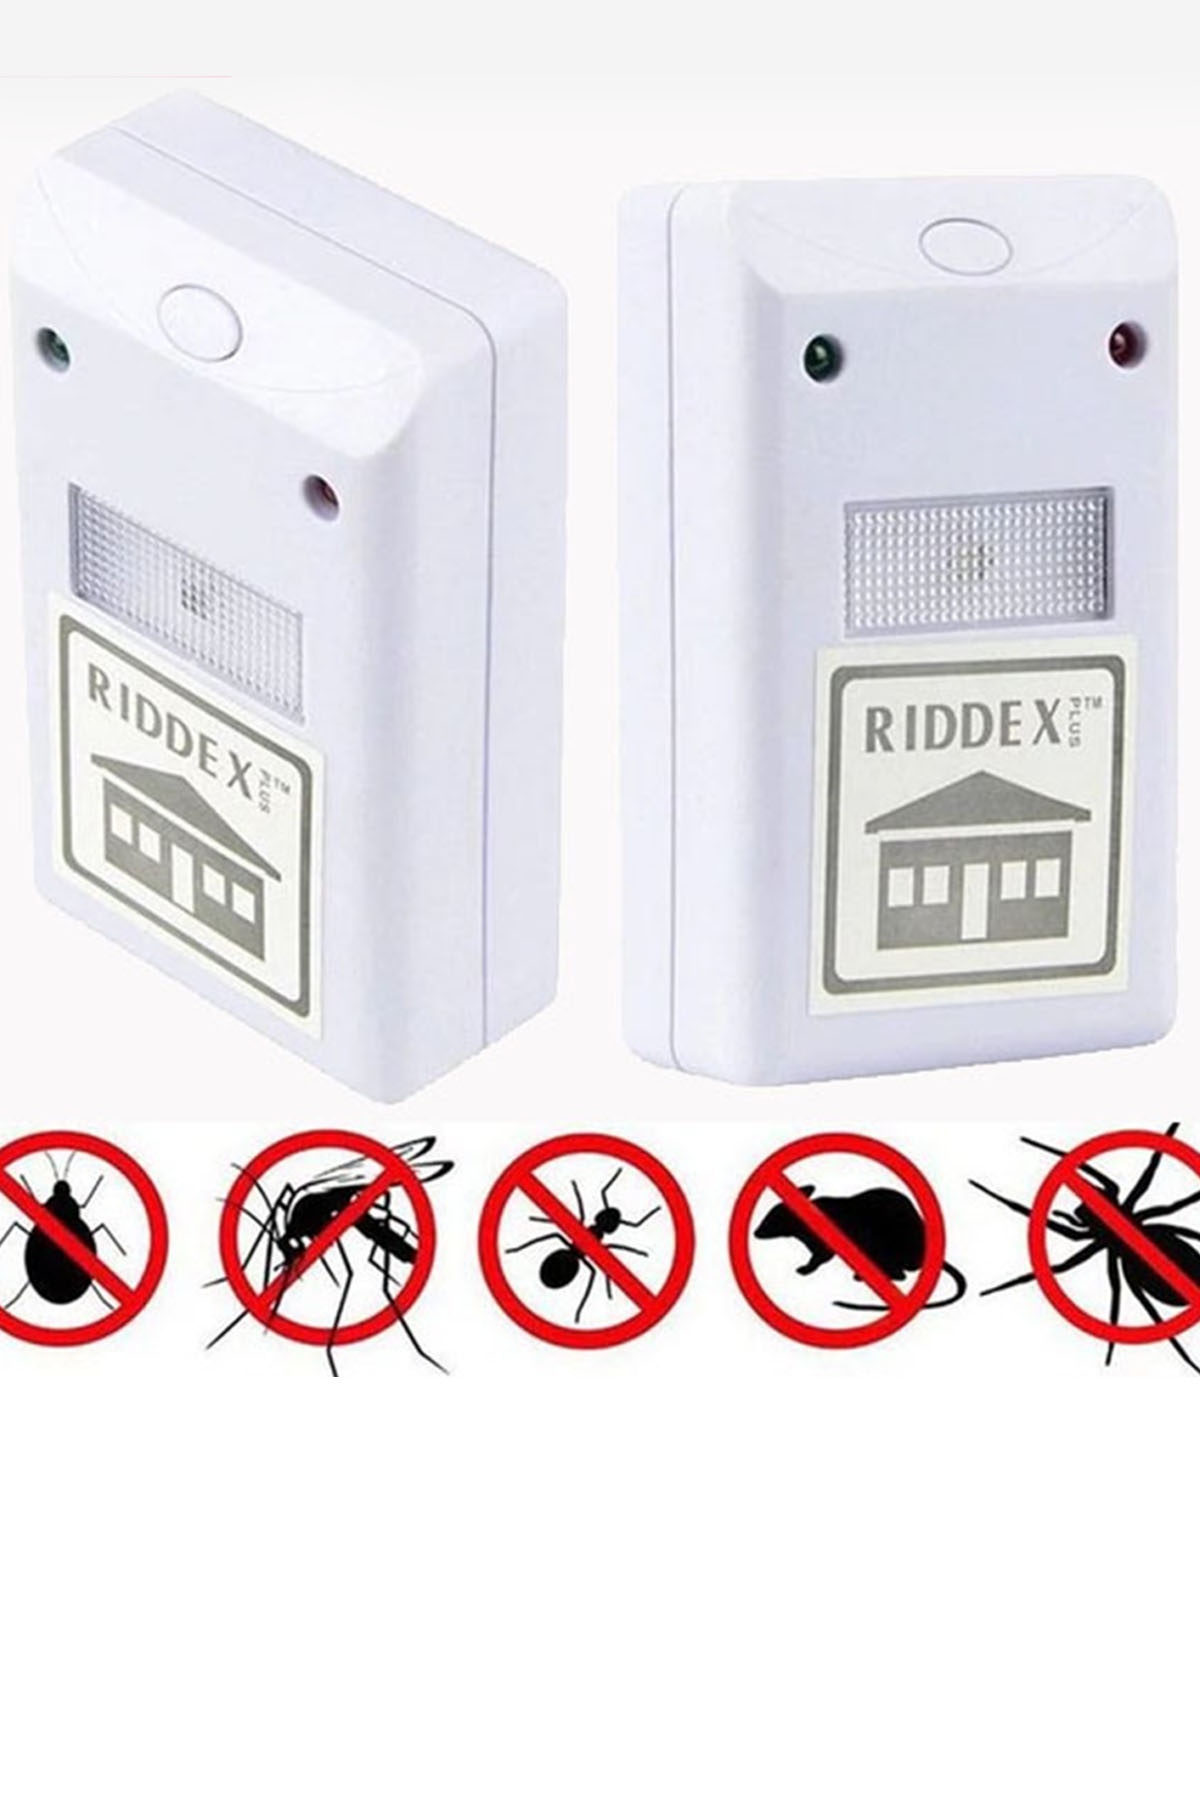 Mobee Ultrasonik Riddex Elektronik Fare Ve Haşere Kovucu Sinek Sivrisinek Böcek Öldürücü 1410